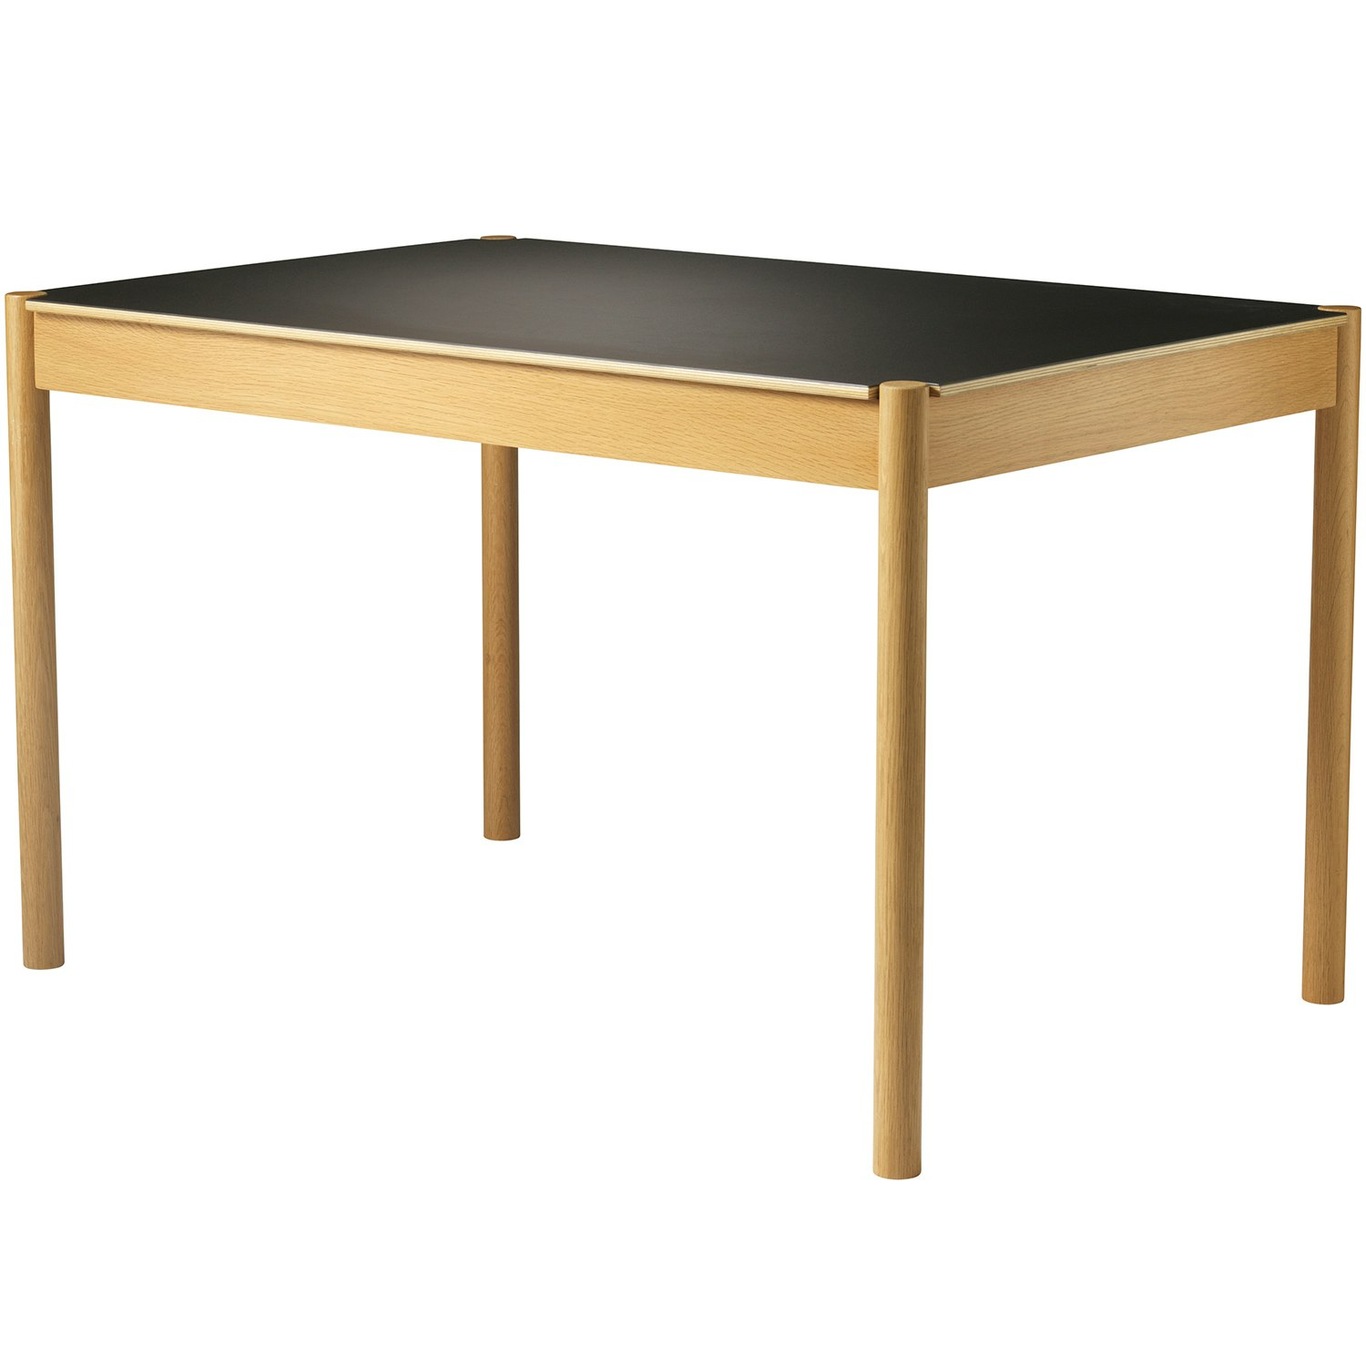 C44 Dining Table Oak / Linoleum, 80x120 cm